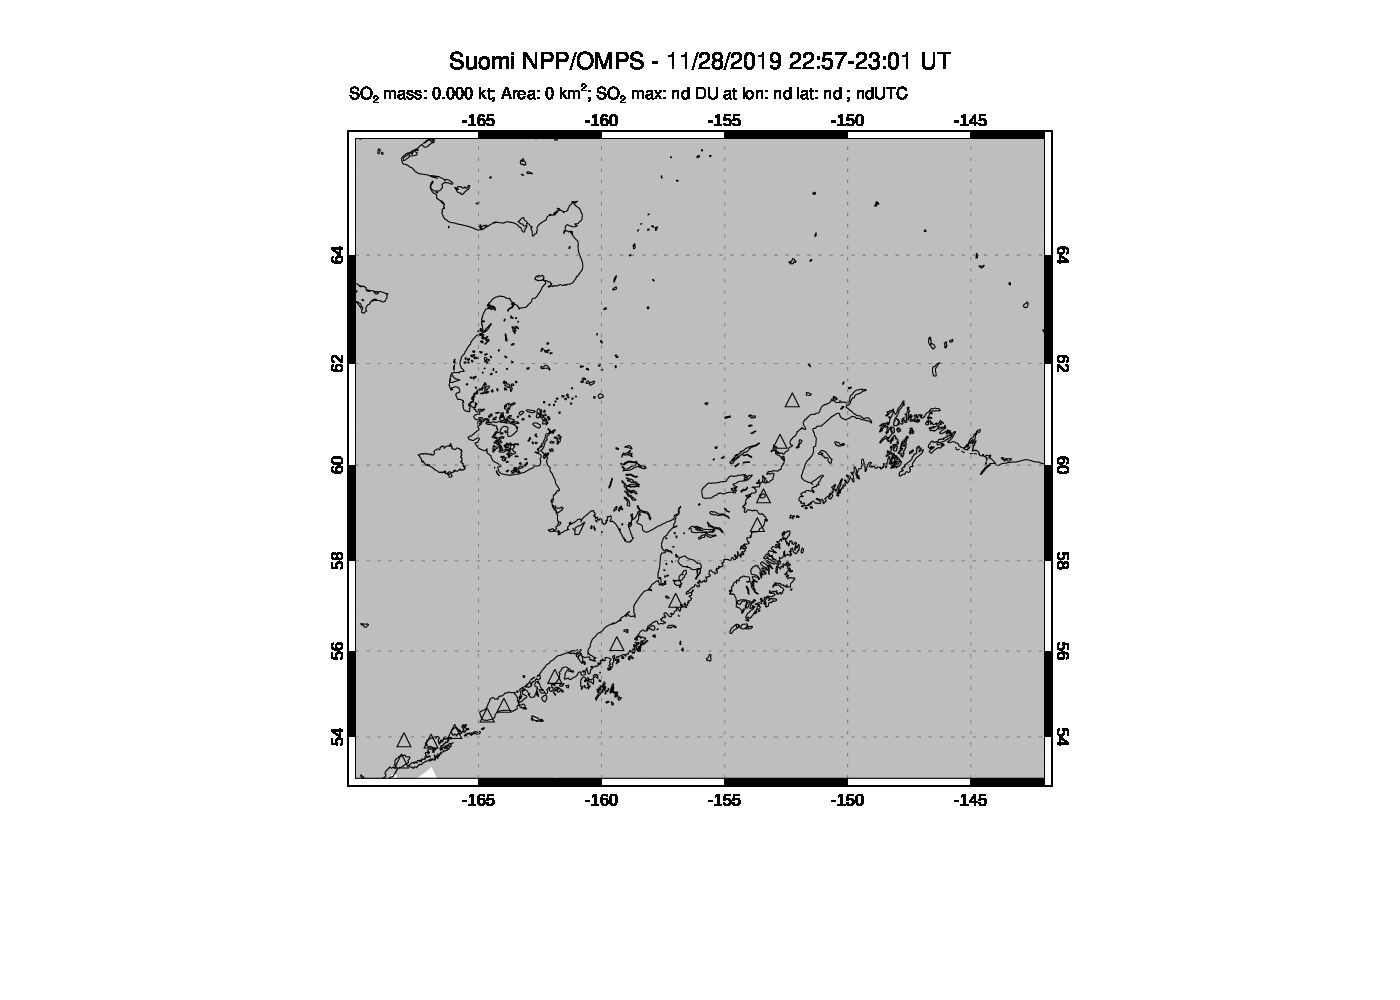 A sulfur dioxide image over Alaska, USA on Nov 28, 2019.